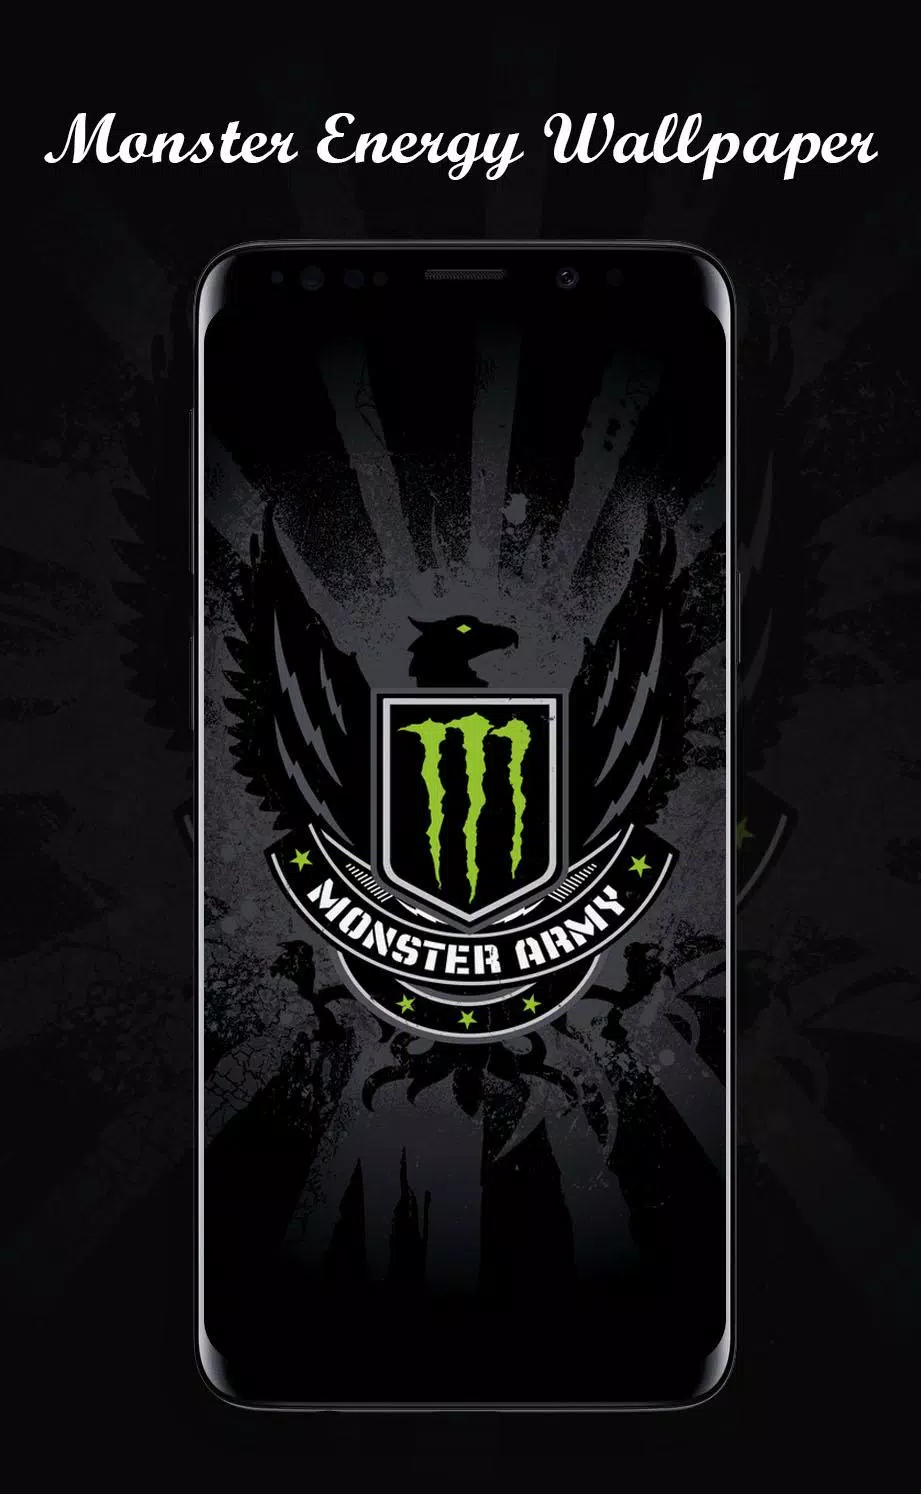 Monster Energy Wallpapers HD 4K Android के लिए APK डाउनलोड करें